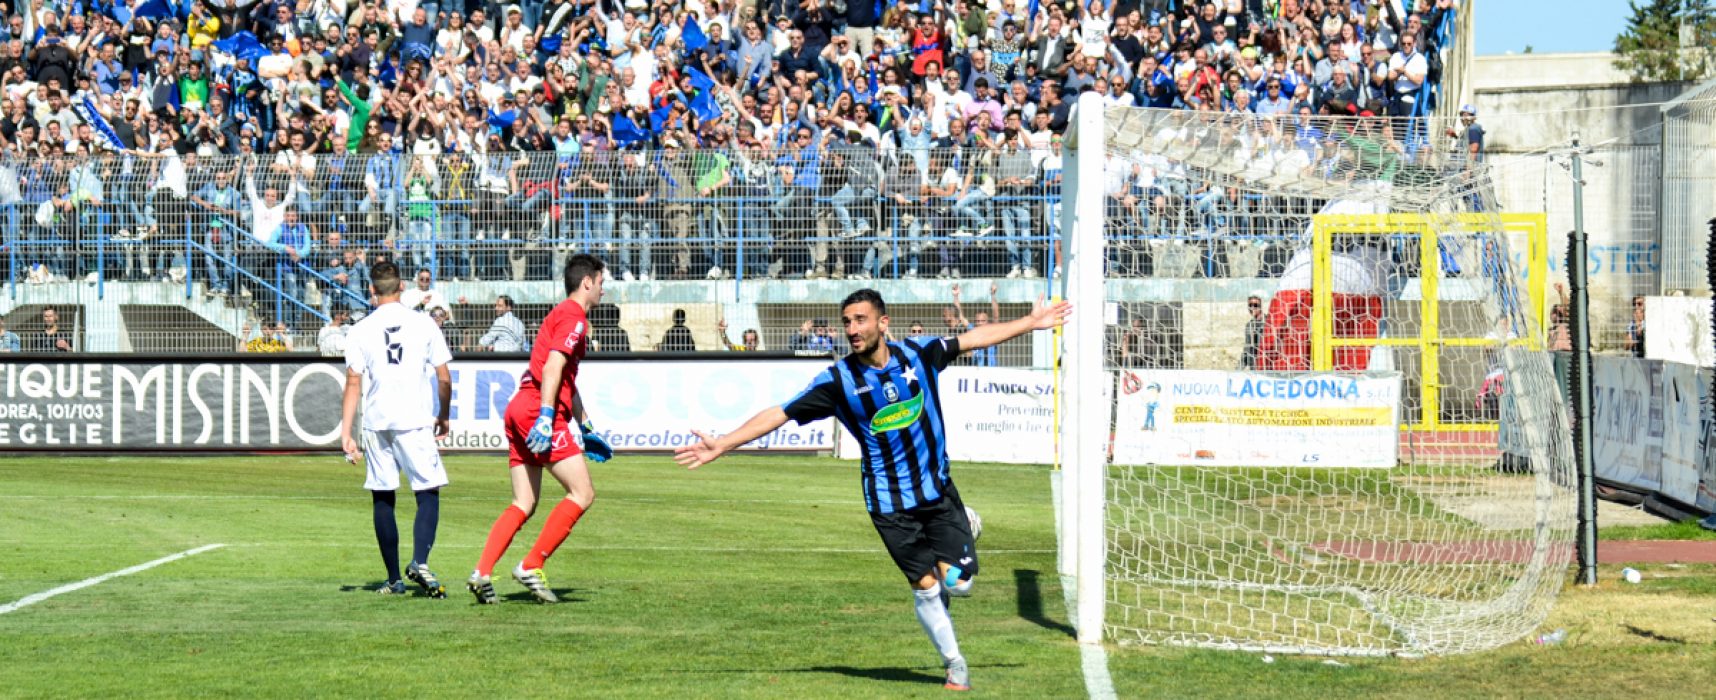 Bisceglie Calcio, a Fermo c’è il Ravenna nelle semifinali della poule scudetto